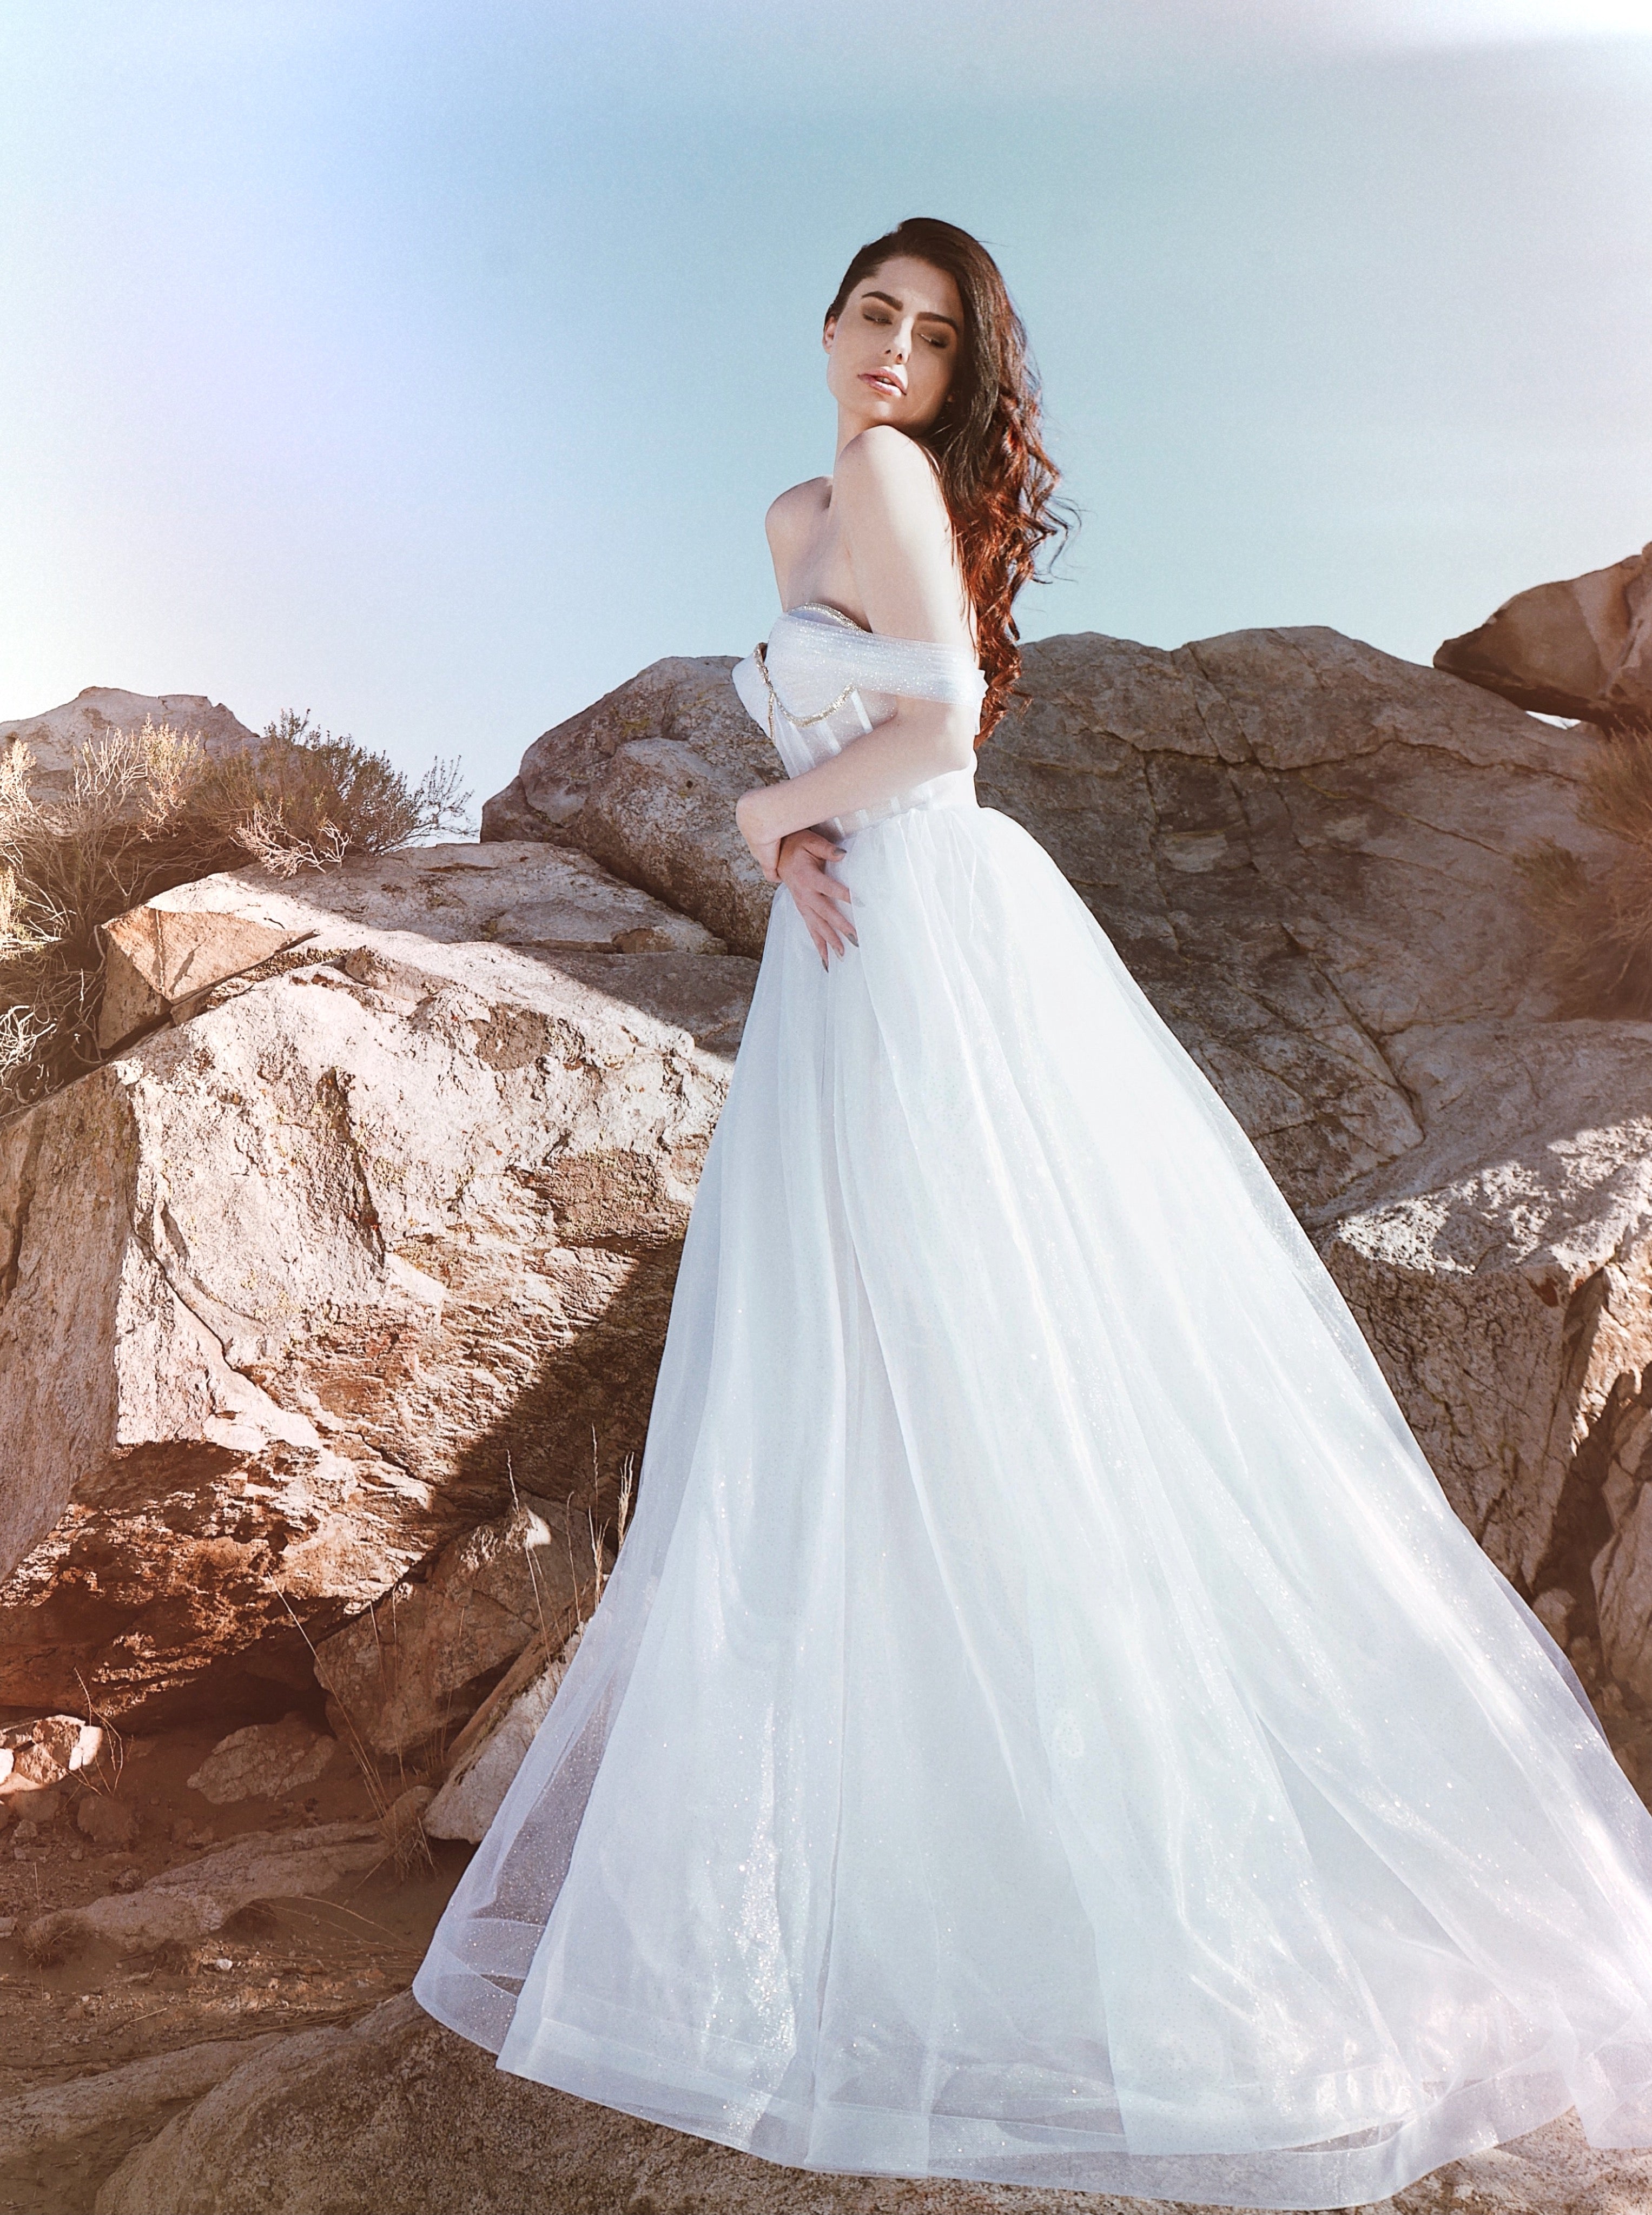 Organza ball gown wedding dress shot in desert